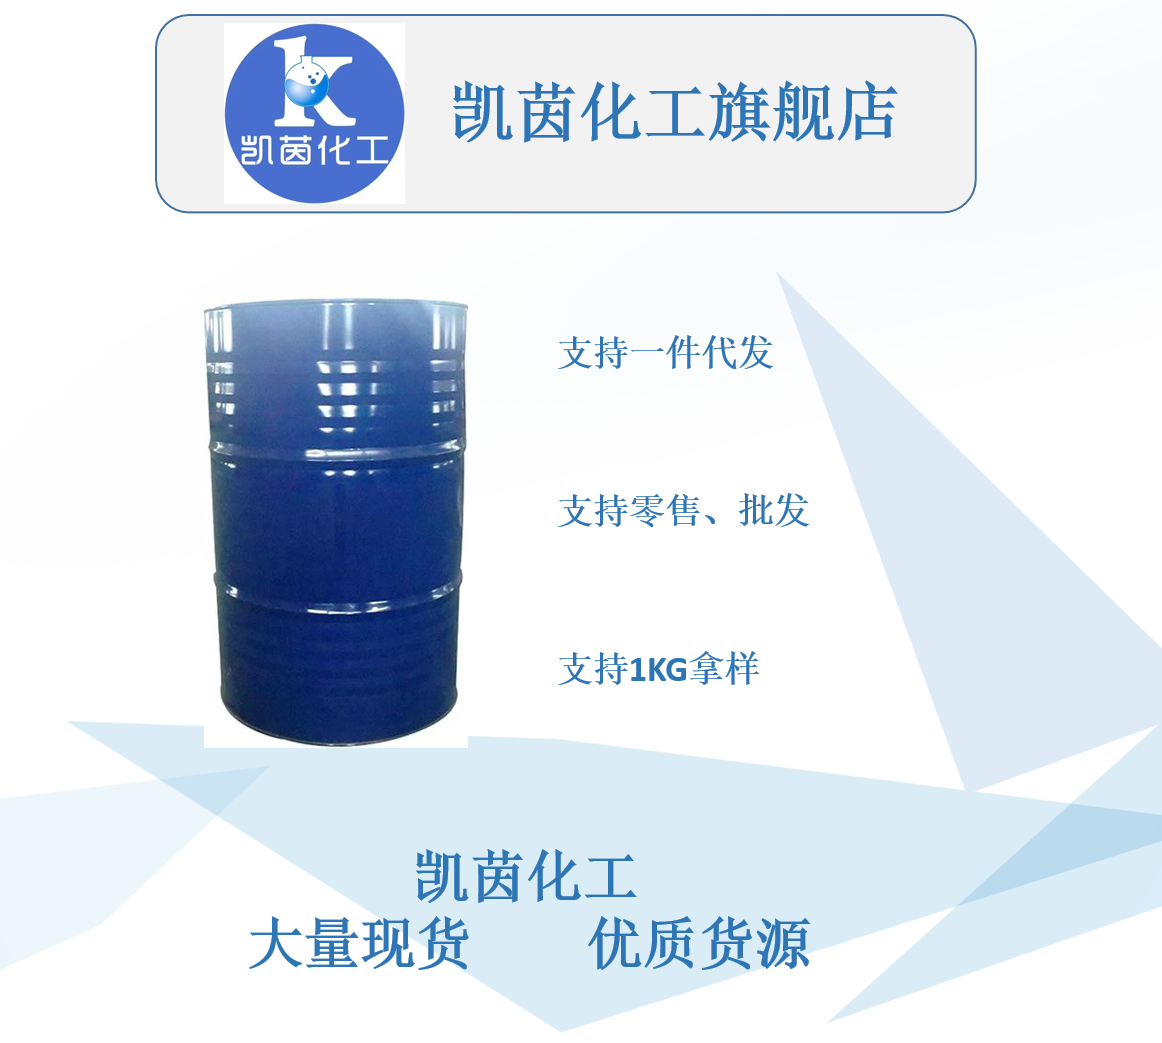 厂家现货 工业级异辛醇 国标辛醇99.9%含量 桶装 齐鲁石化 可零售